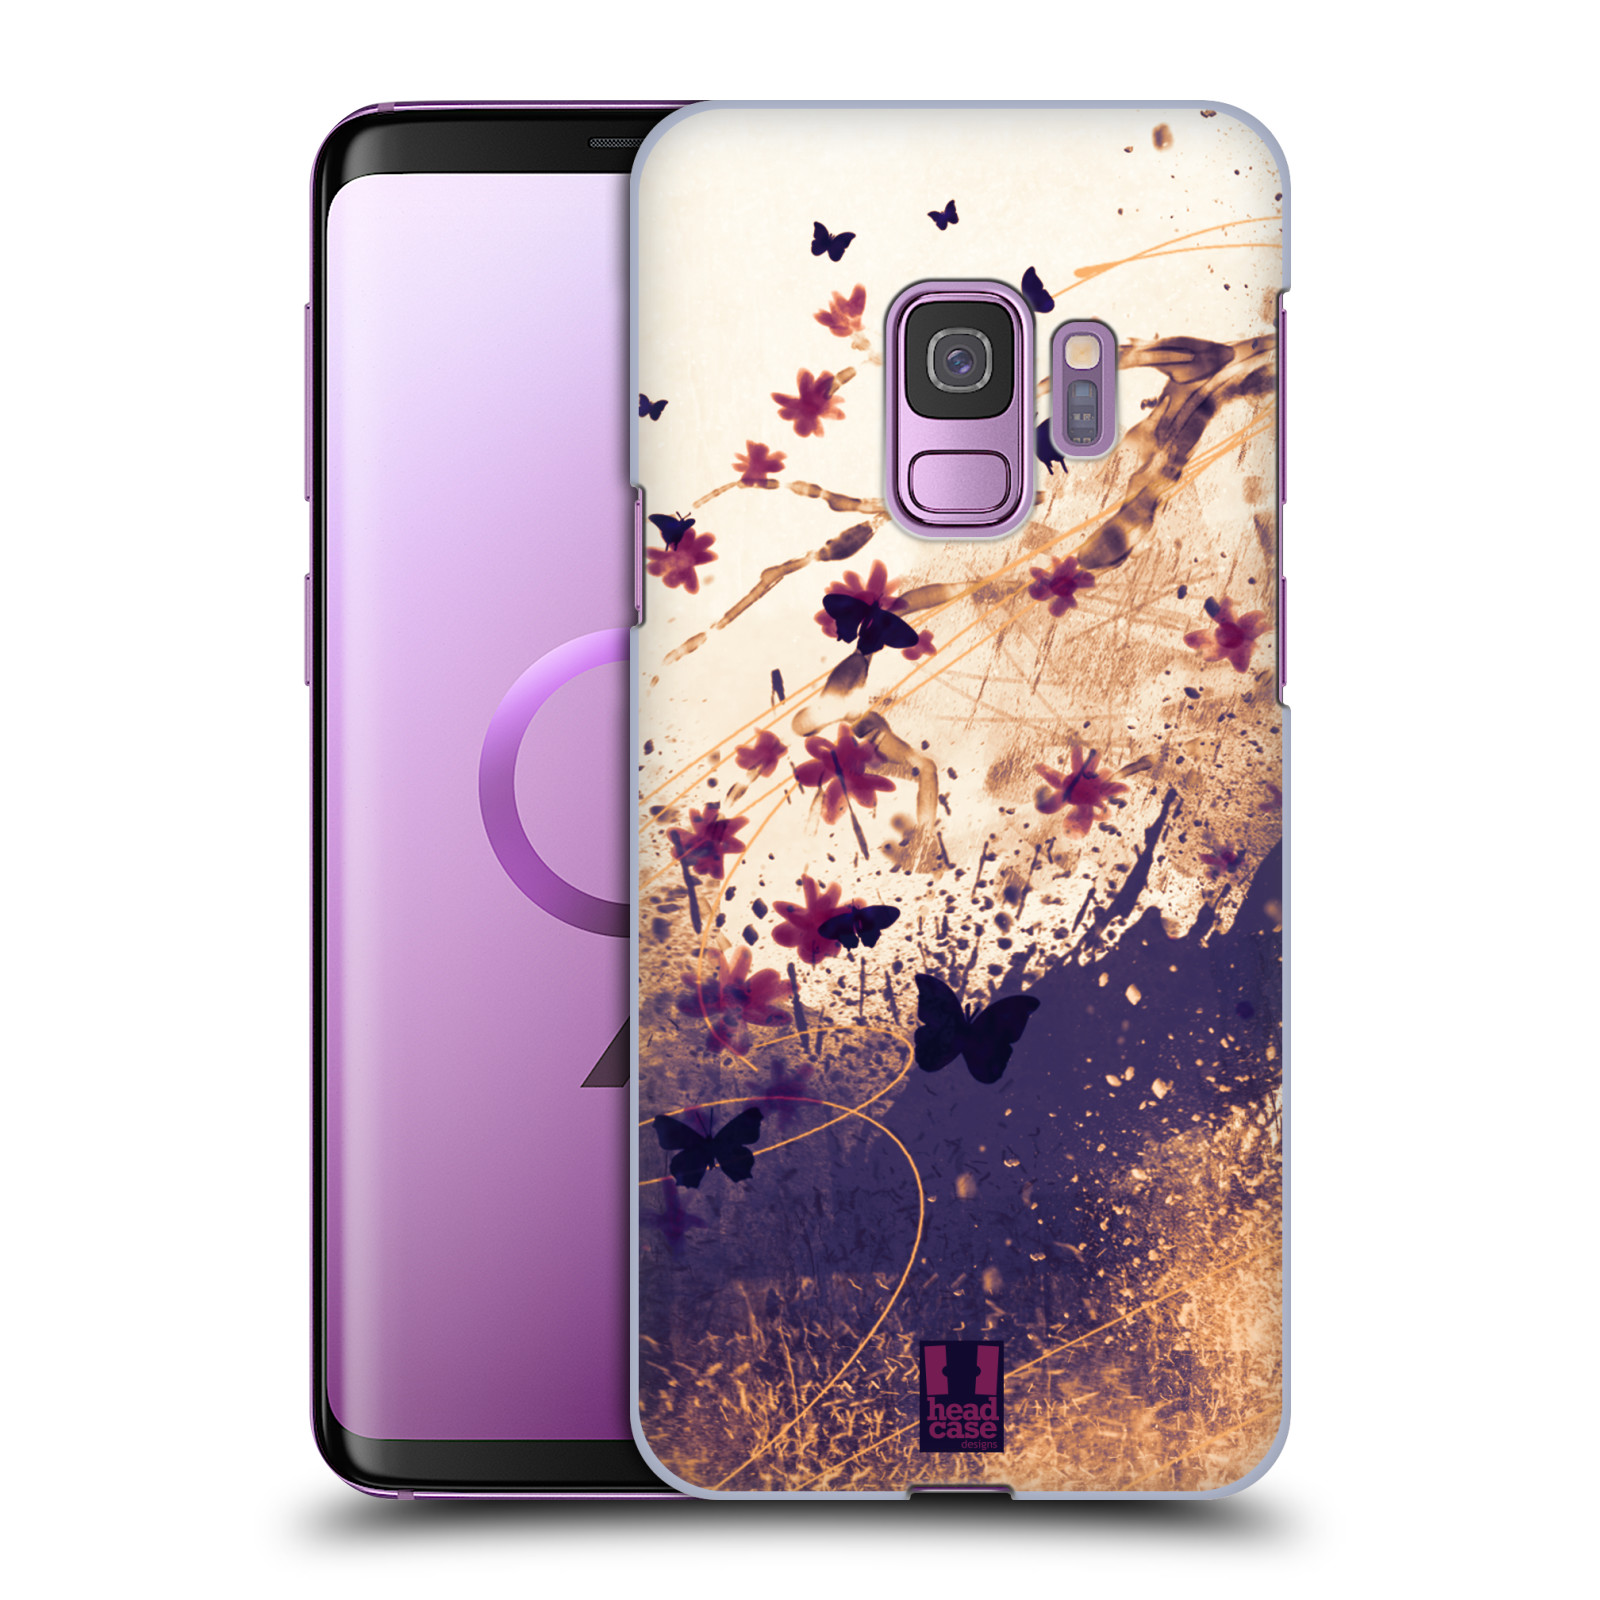 Zadní obal pro mobil Samsung Galaxy S9 - HEAD CASE - Barevné květy a motýlci